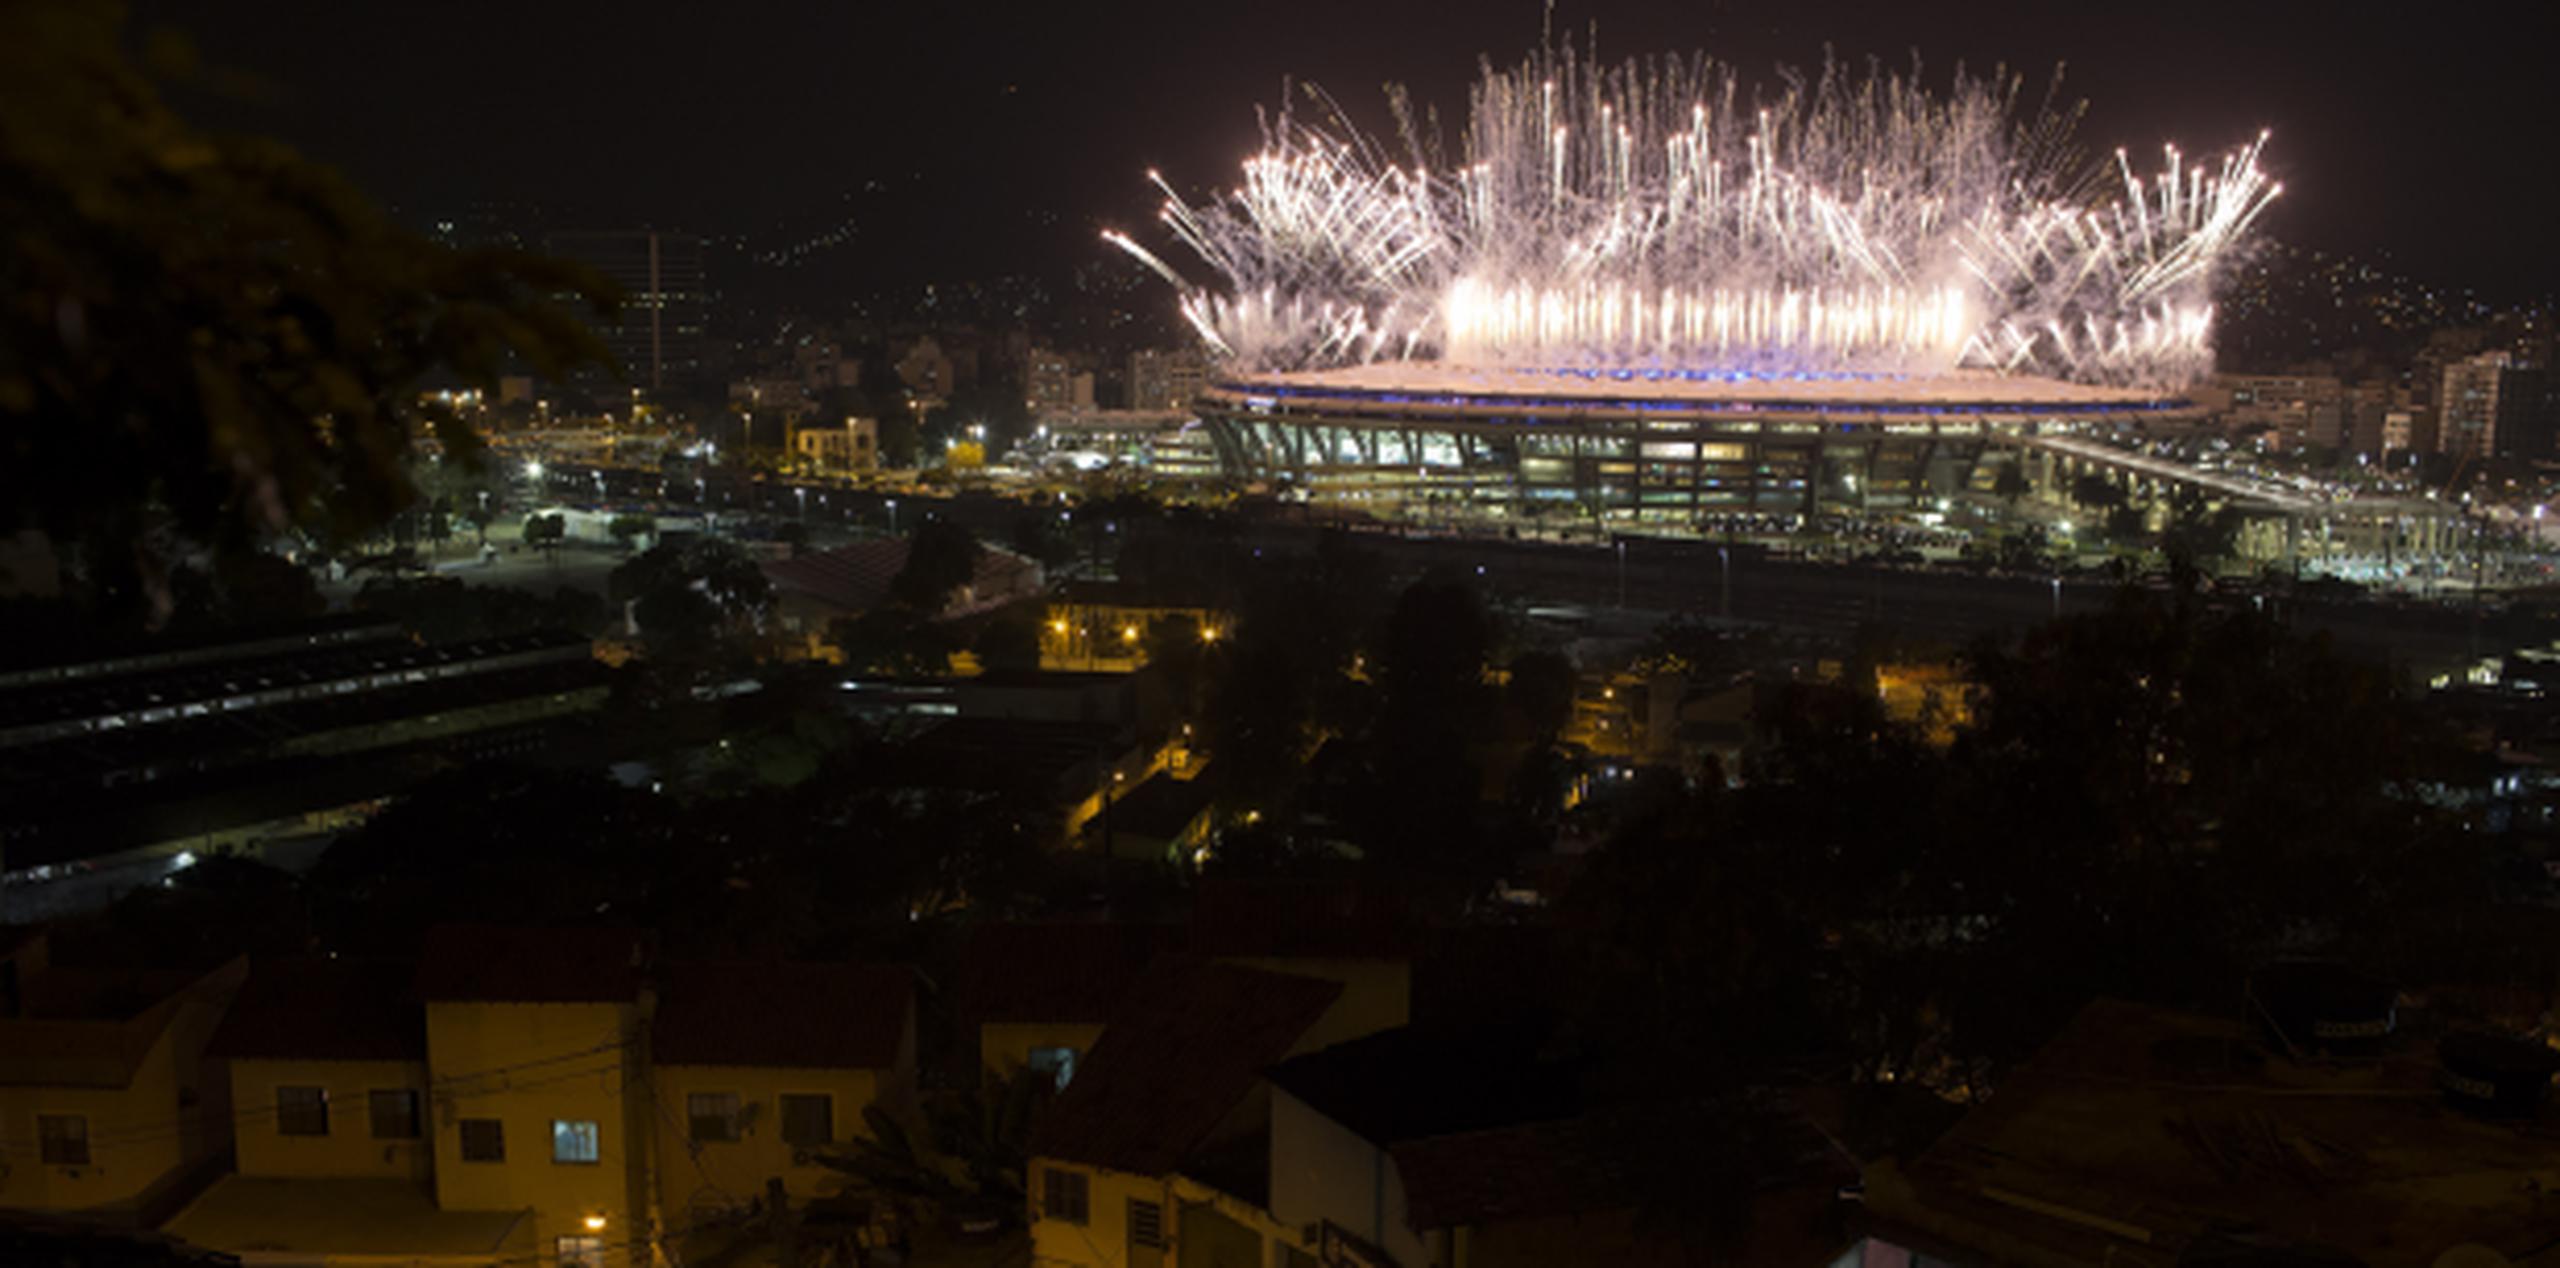 La escasez de fondos, los recortes presupuestarios y los costos excesivos plagaron a los organizadores en la etapa previa a los juegos de Río. (Agencia EFE)